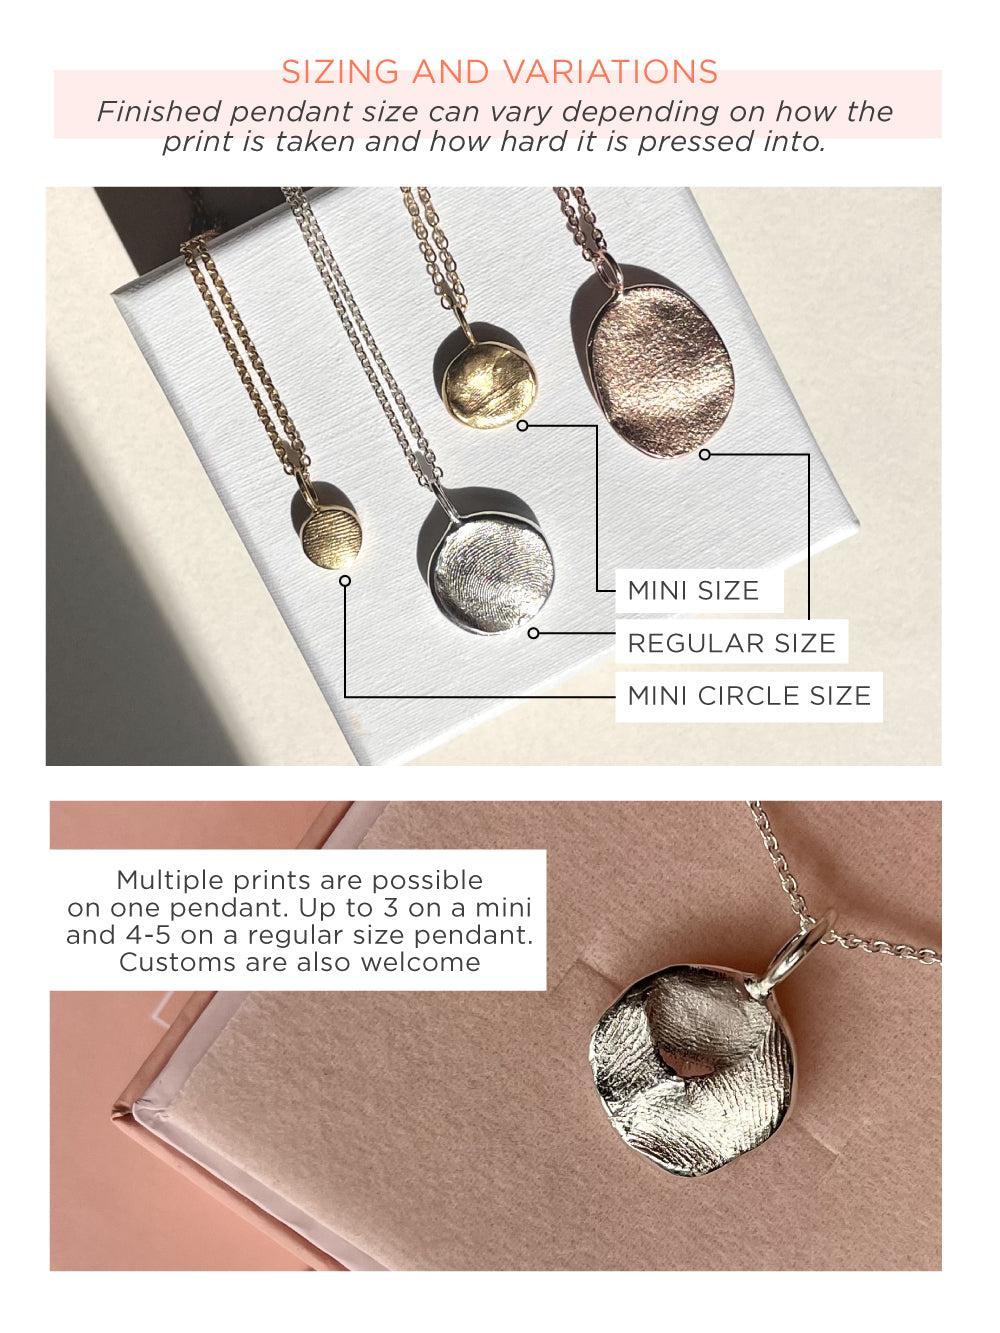 Infant Impression Pendant - 9ct Gold - Fingerprint Impression Kit + Necklace